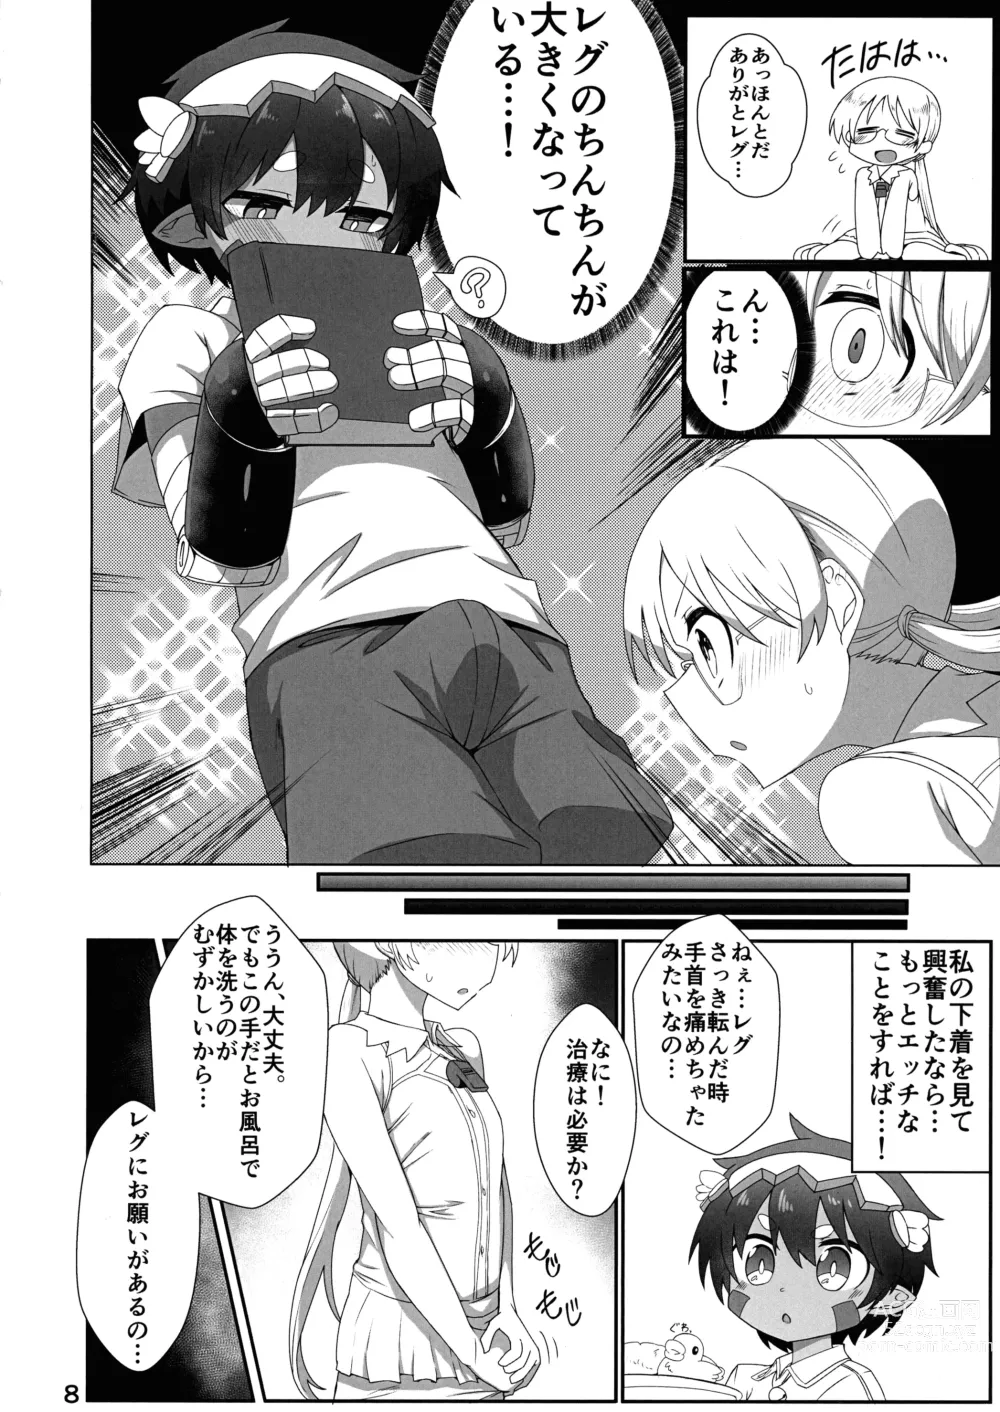 Page 8 of doujinshi Kojiin no Yoru